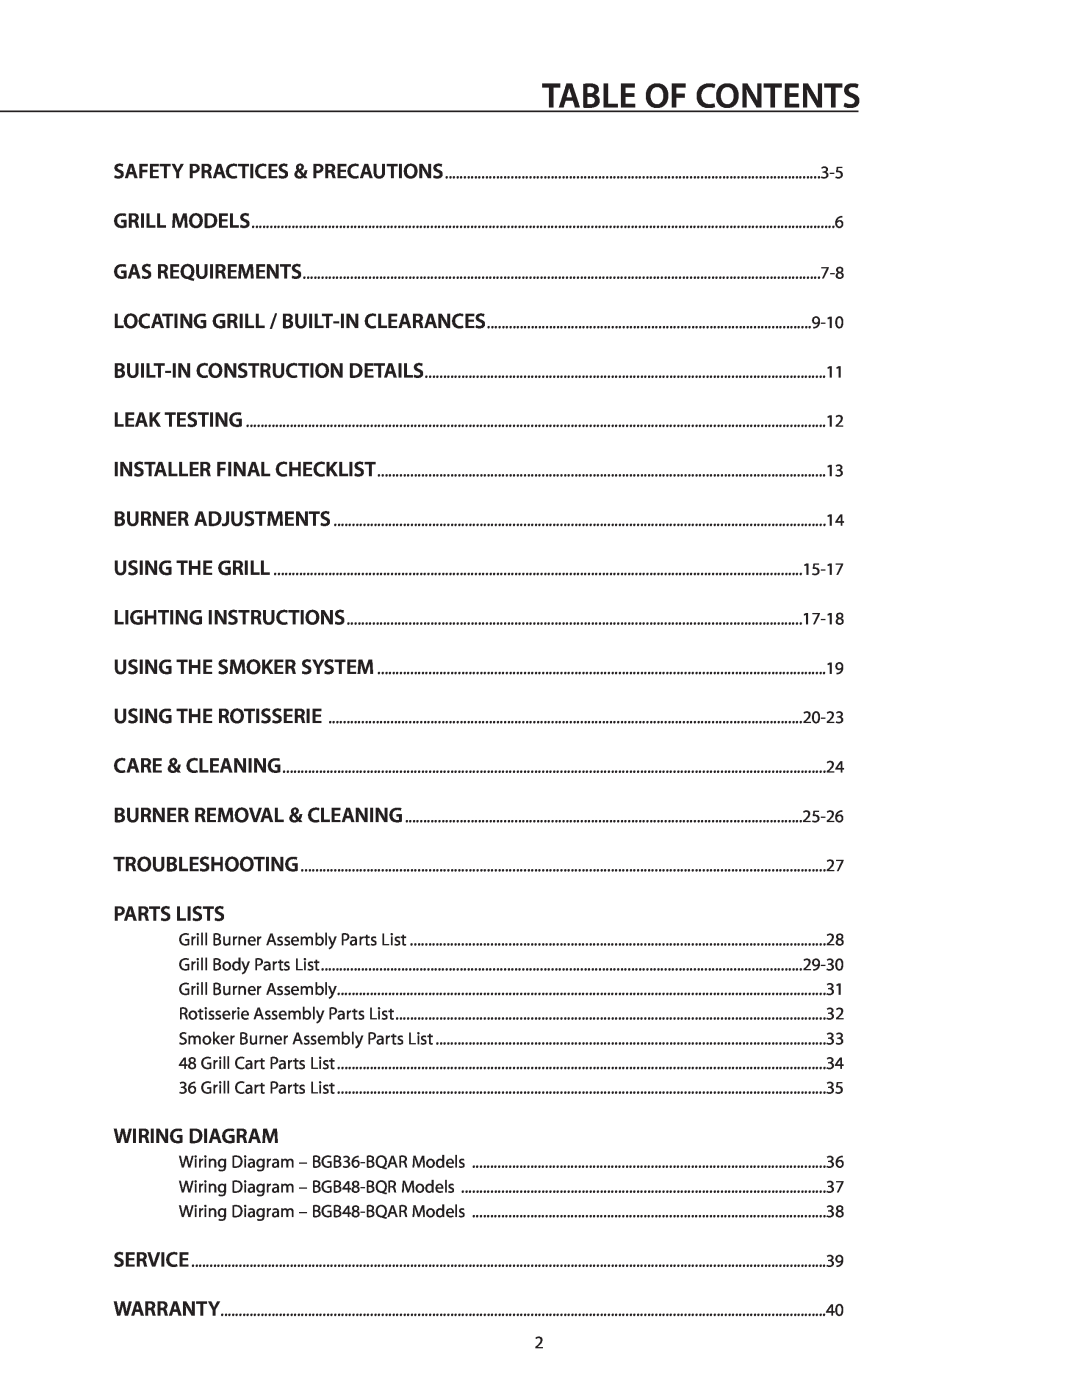 DCS BGB36-BQAR manual Parts Lists, Wiring Diagram, Table Of Contents 